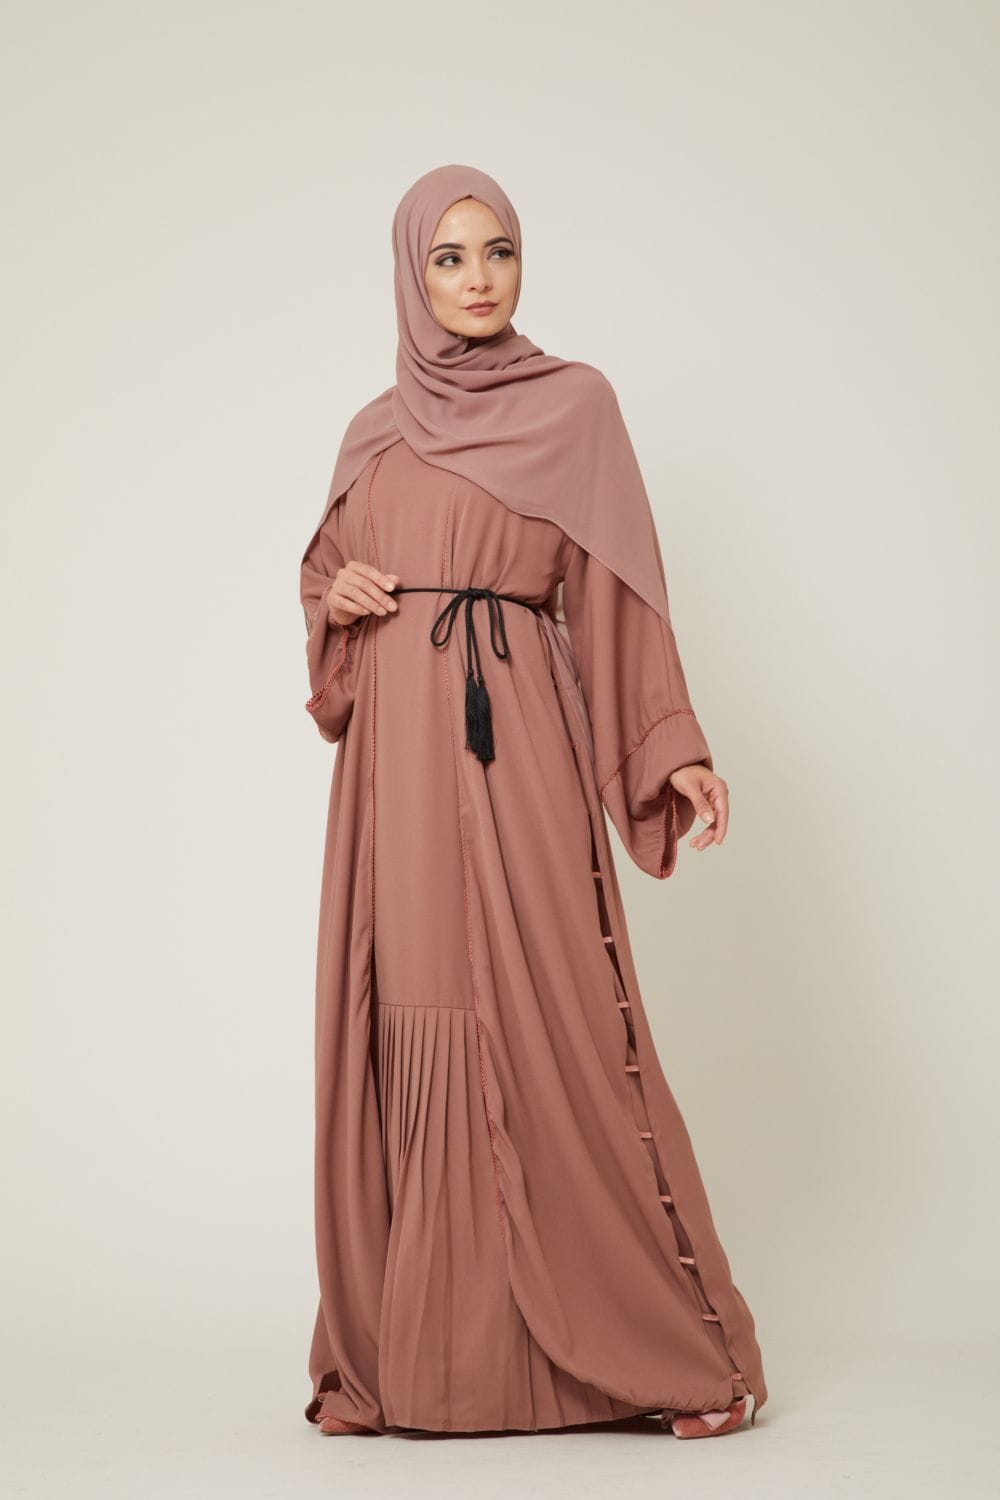 Hijab Fashion for 2018